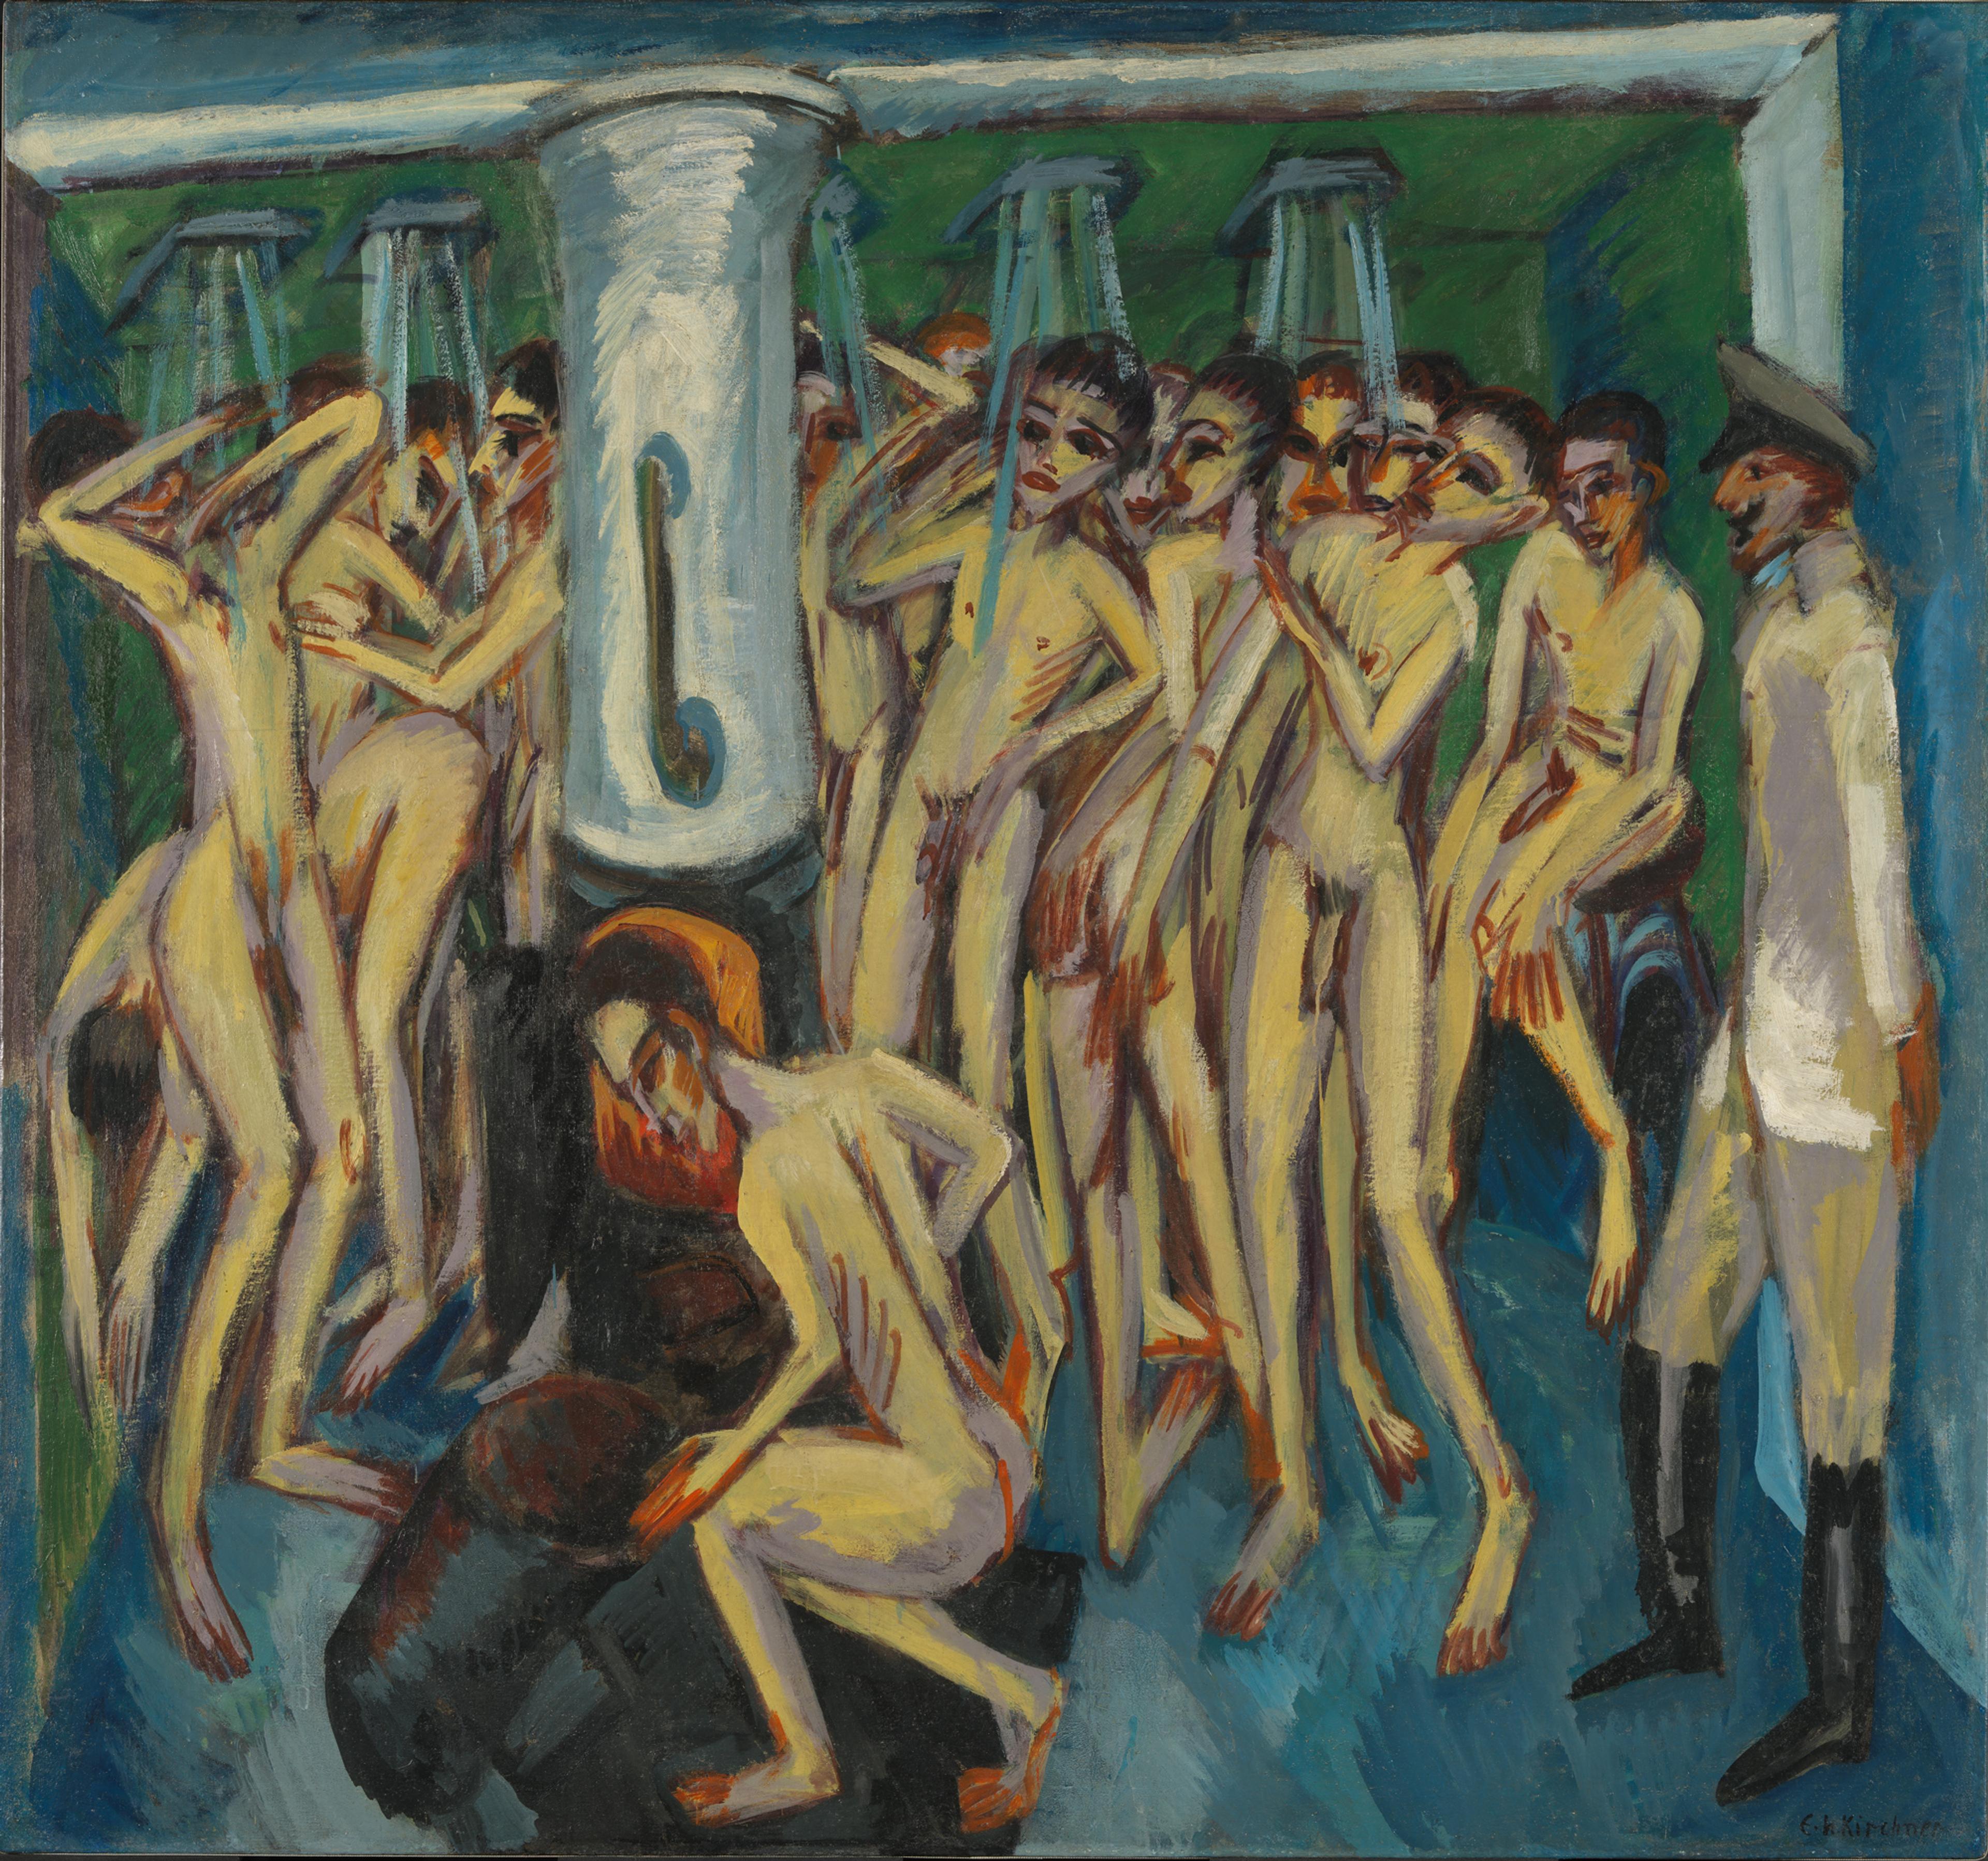 Et ekspressivt maleri av soldater som dusjer i en fellesdusj.